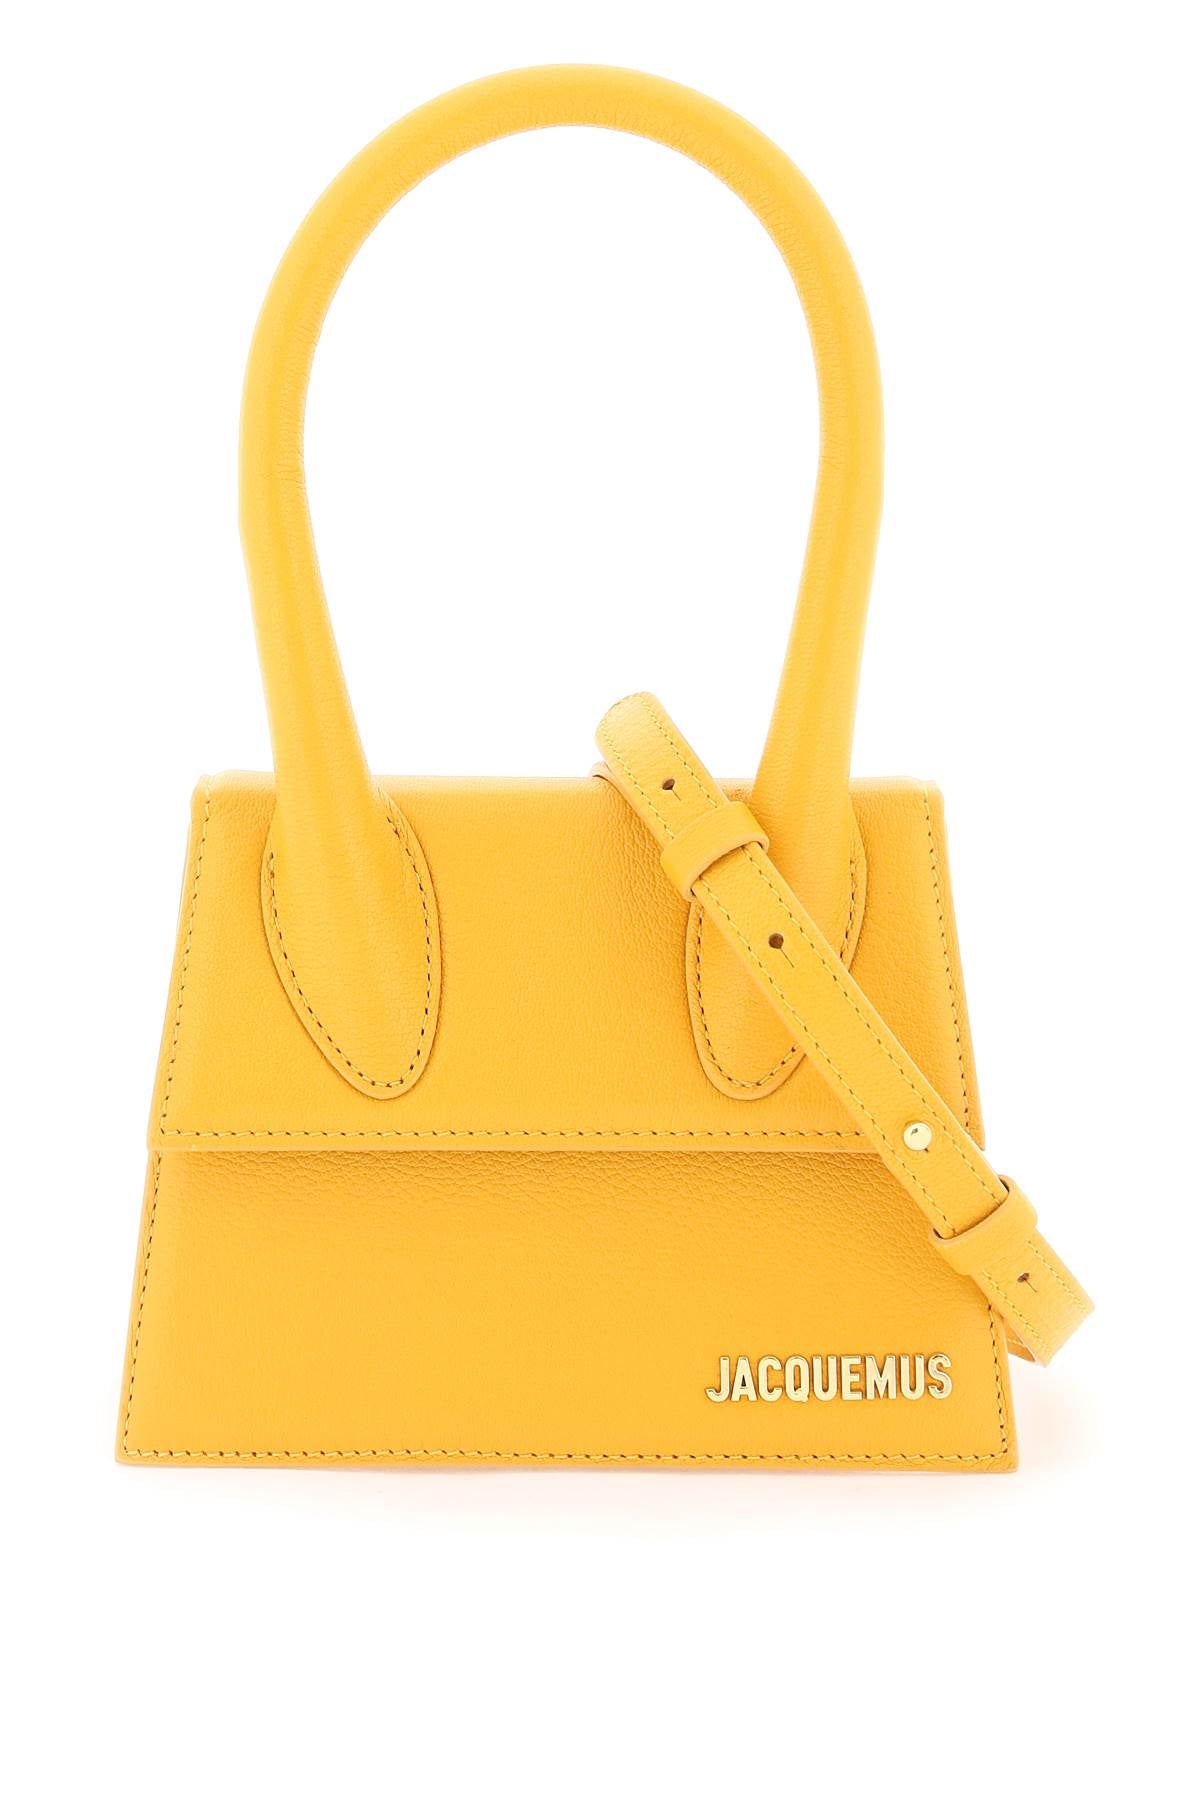 Jacquemus Chic Orange Medium Handbag For Women